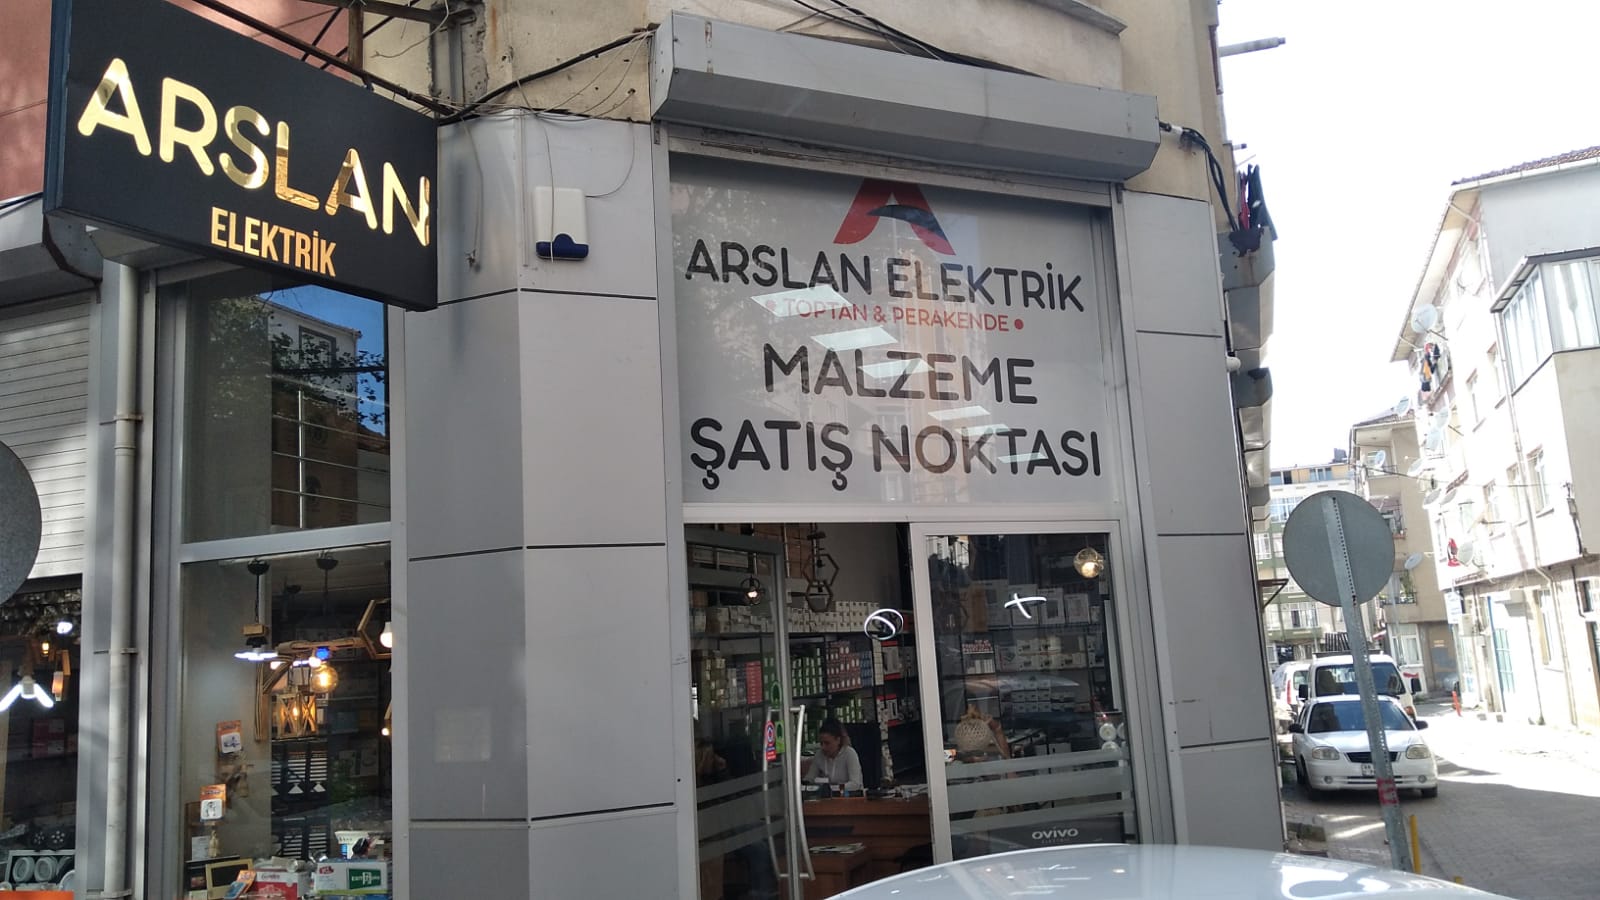 Arslan Elektrik